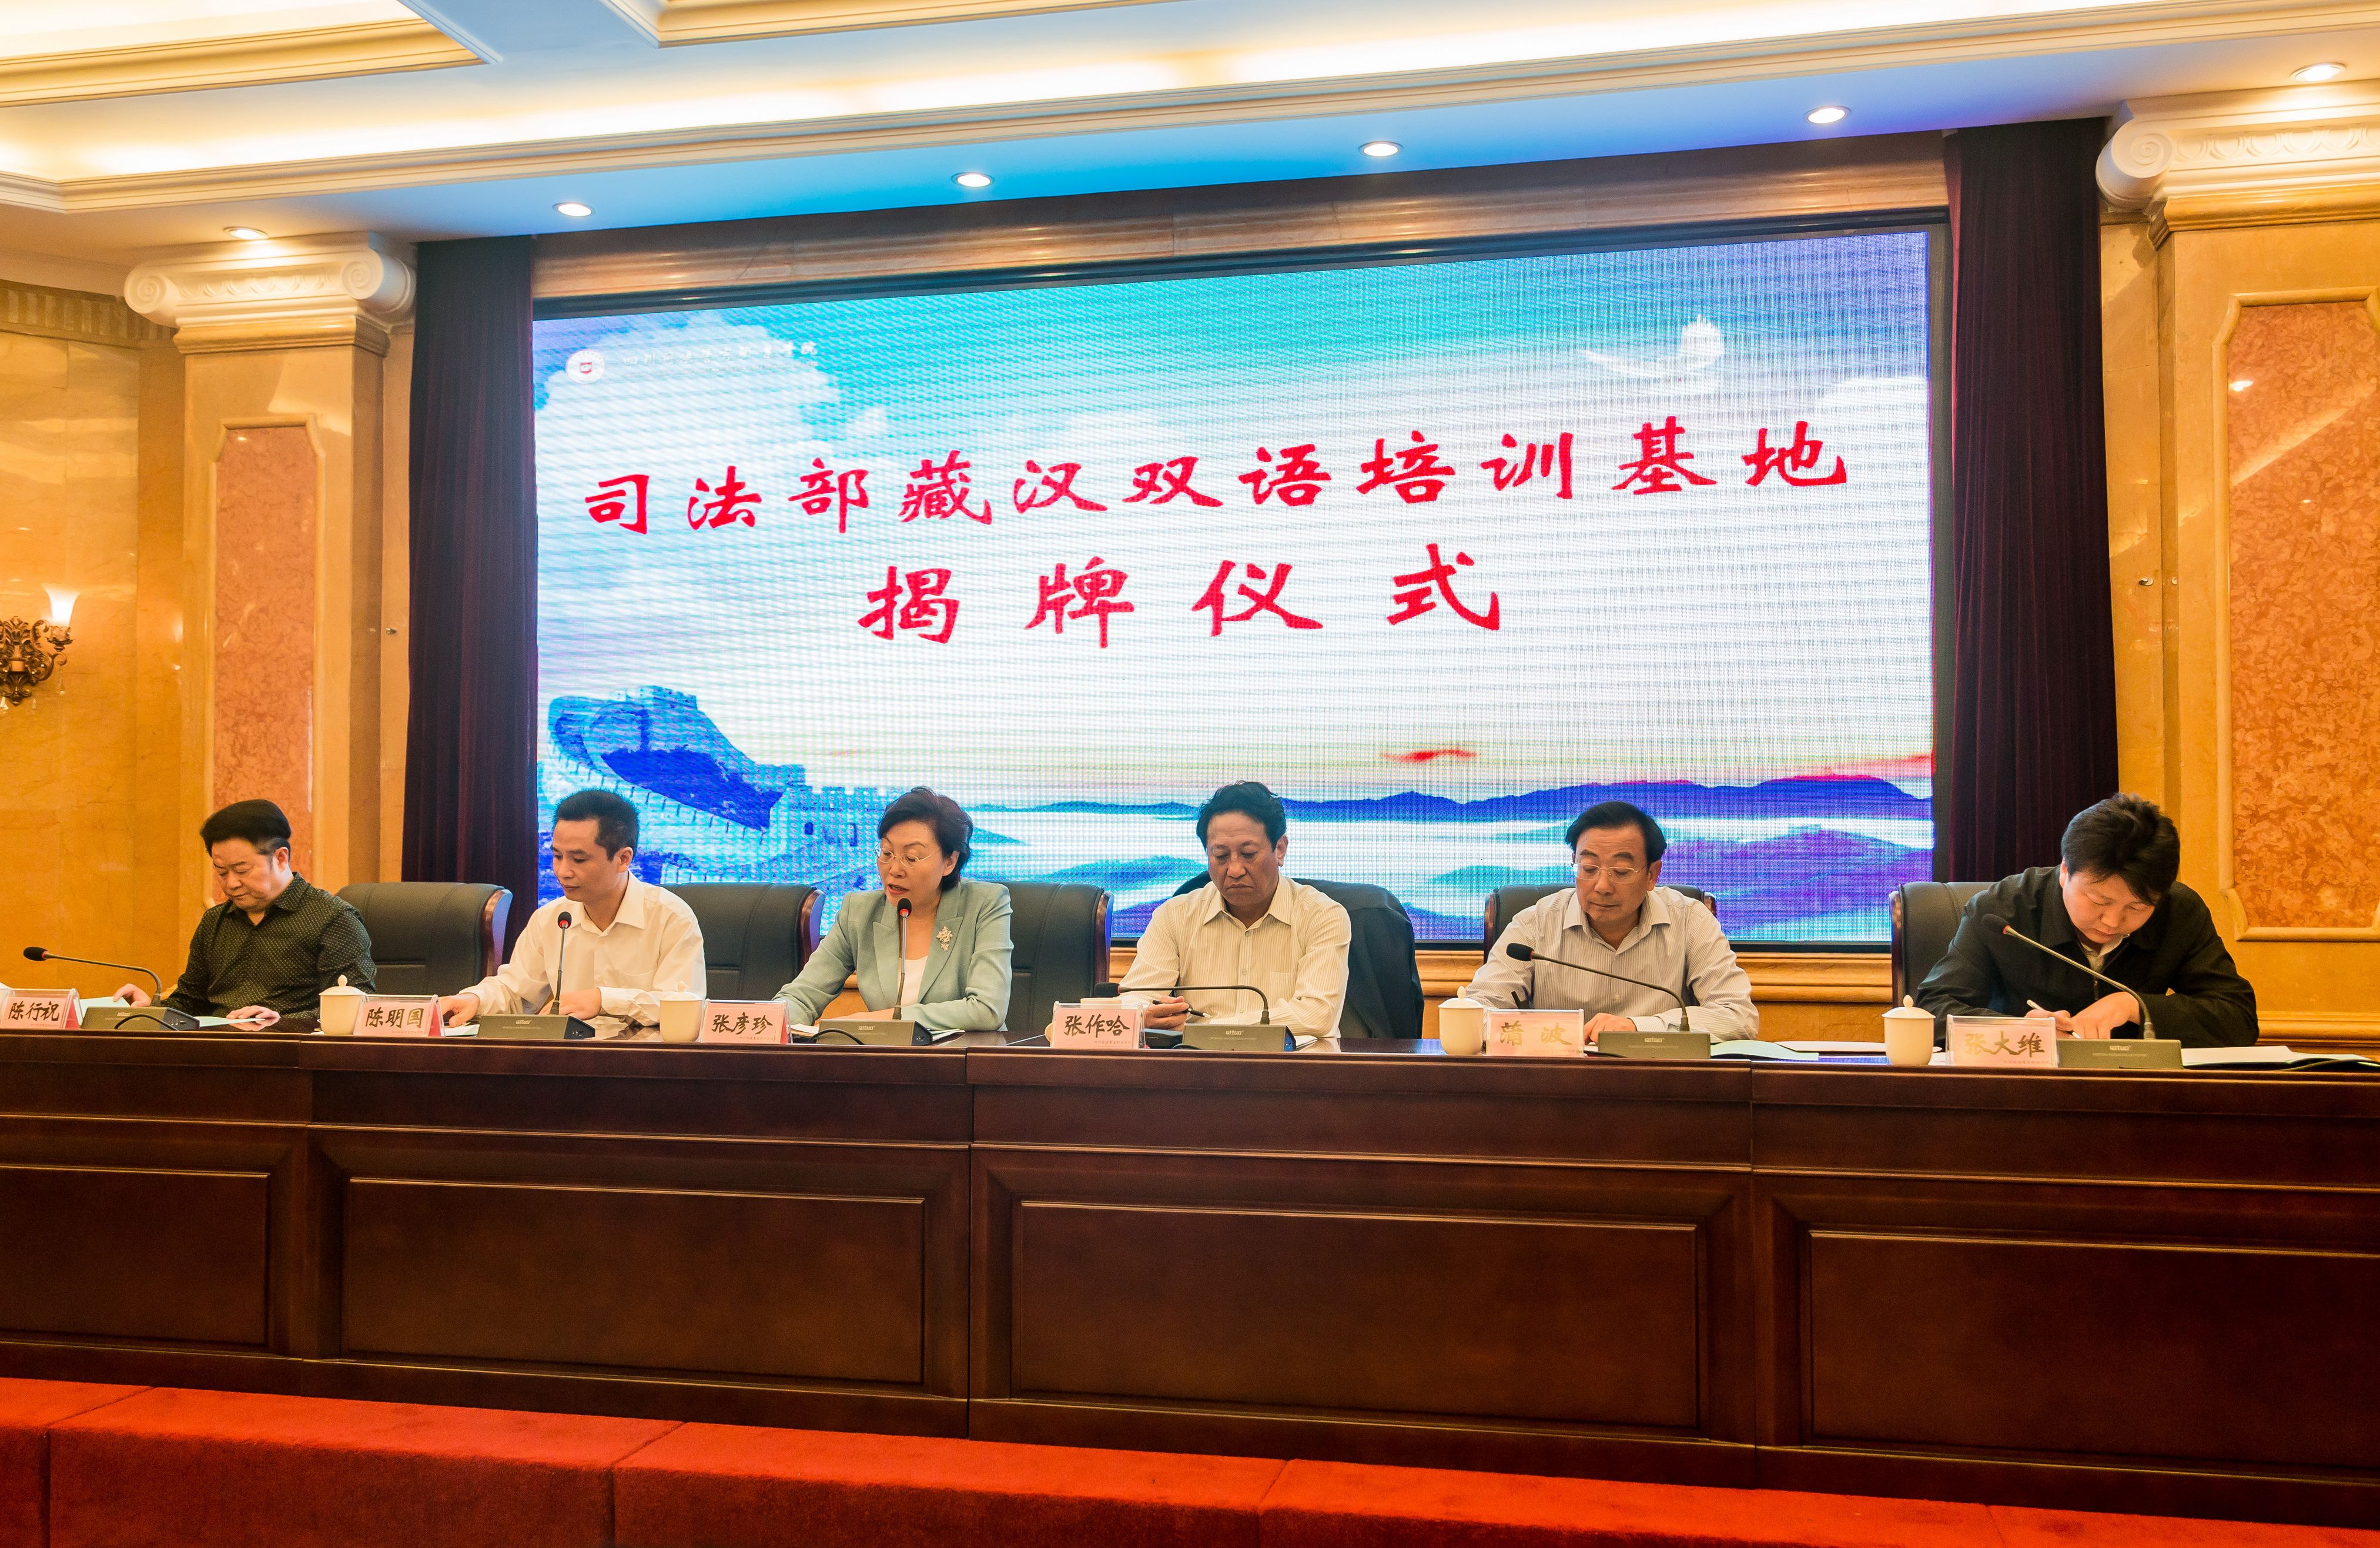 司法部藏汉双语培训基地揭牌仪式在学院成功举行